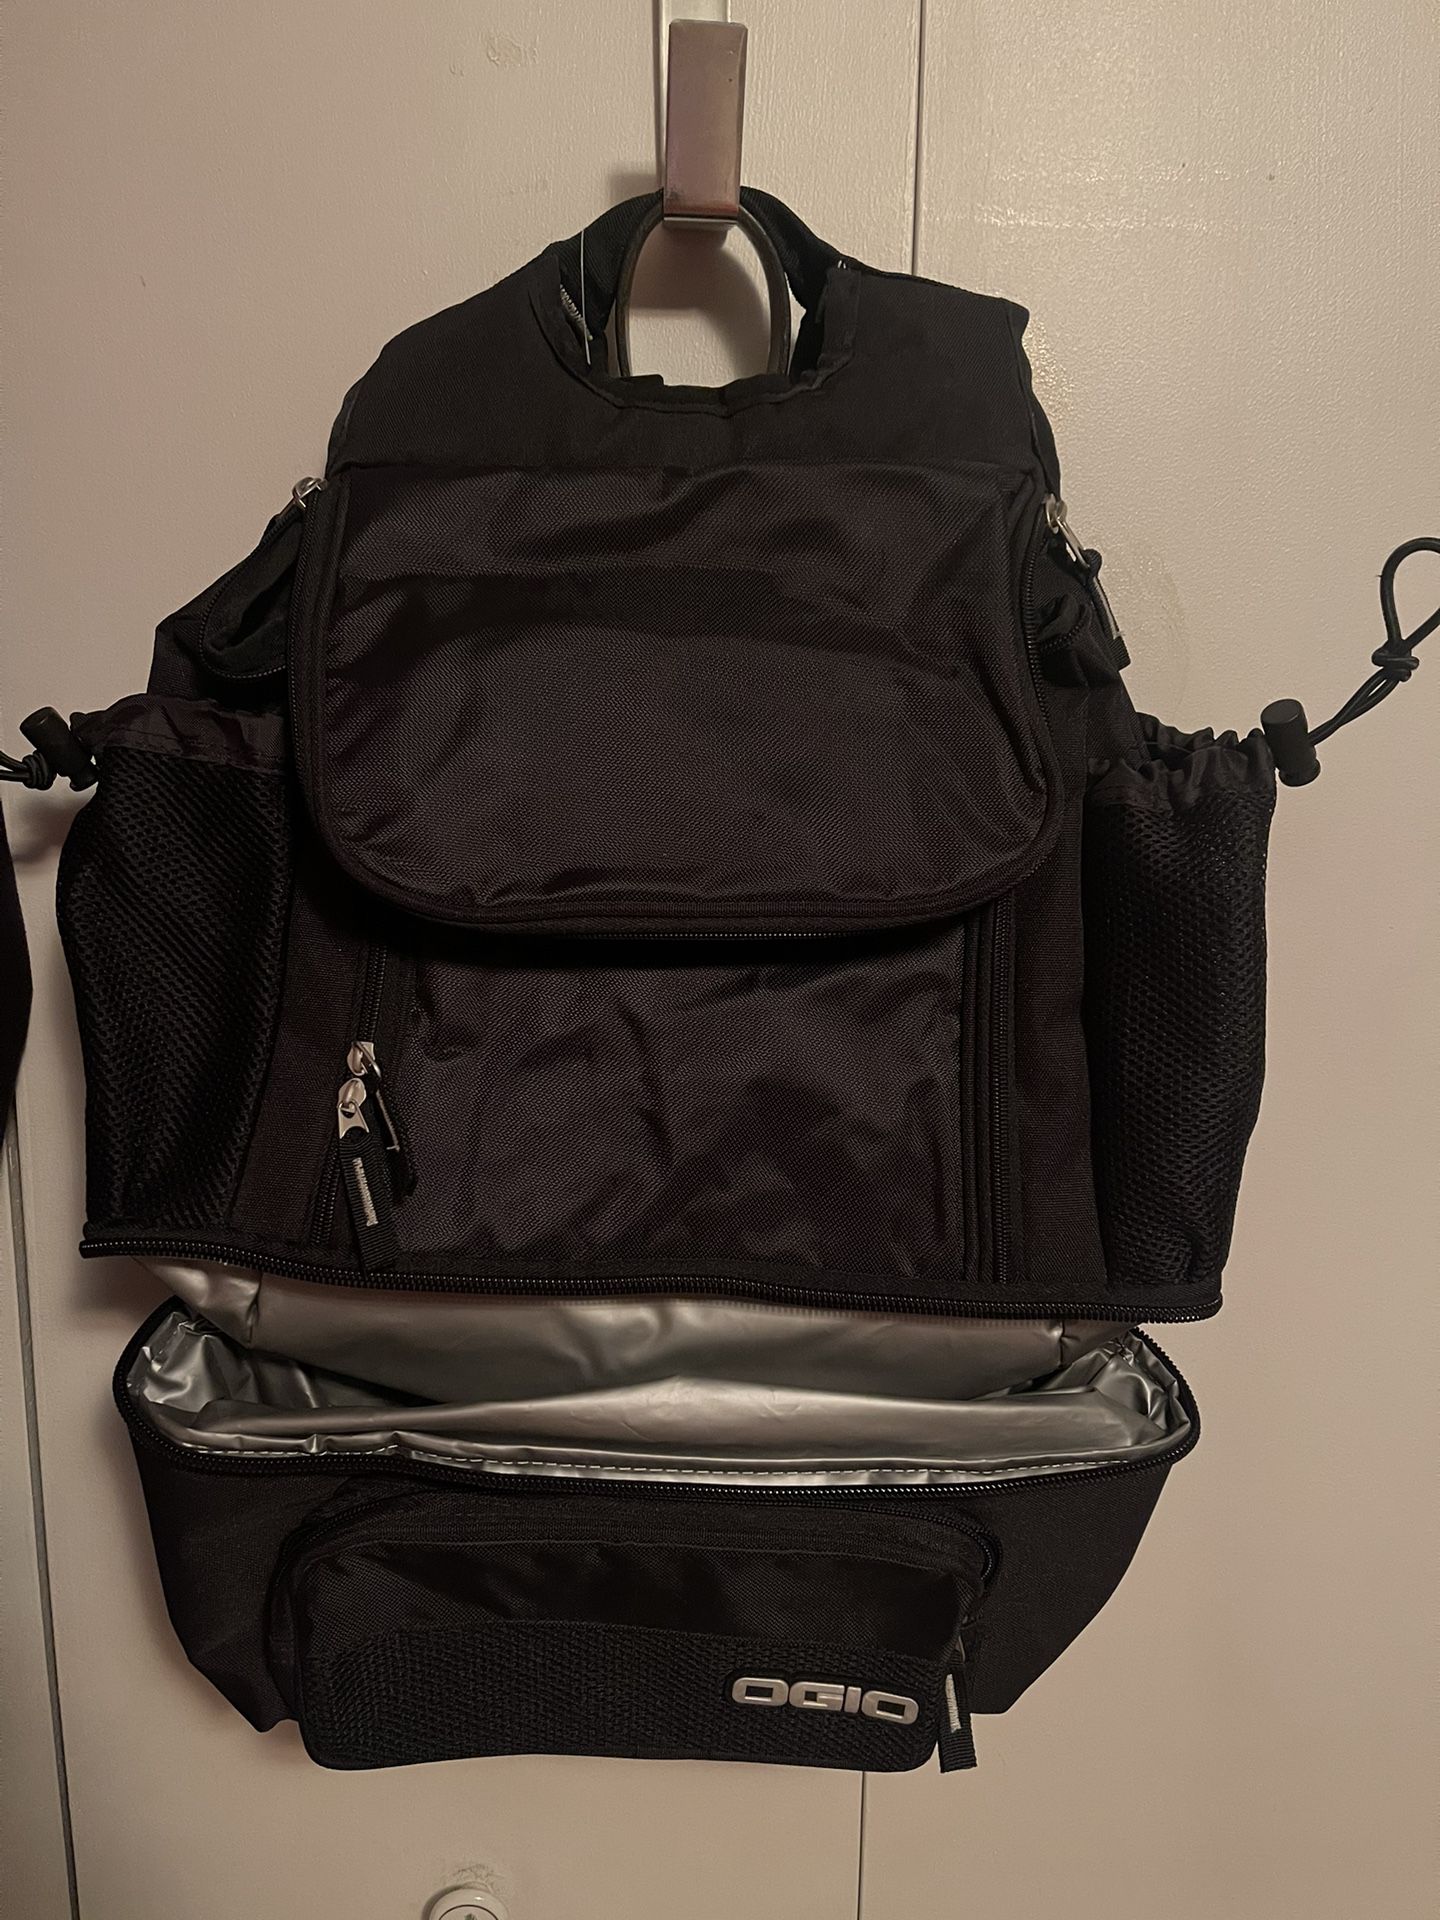 OGIO Cooler Backpack